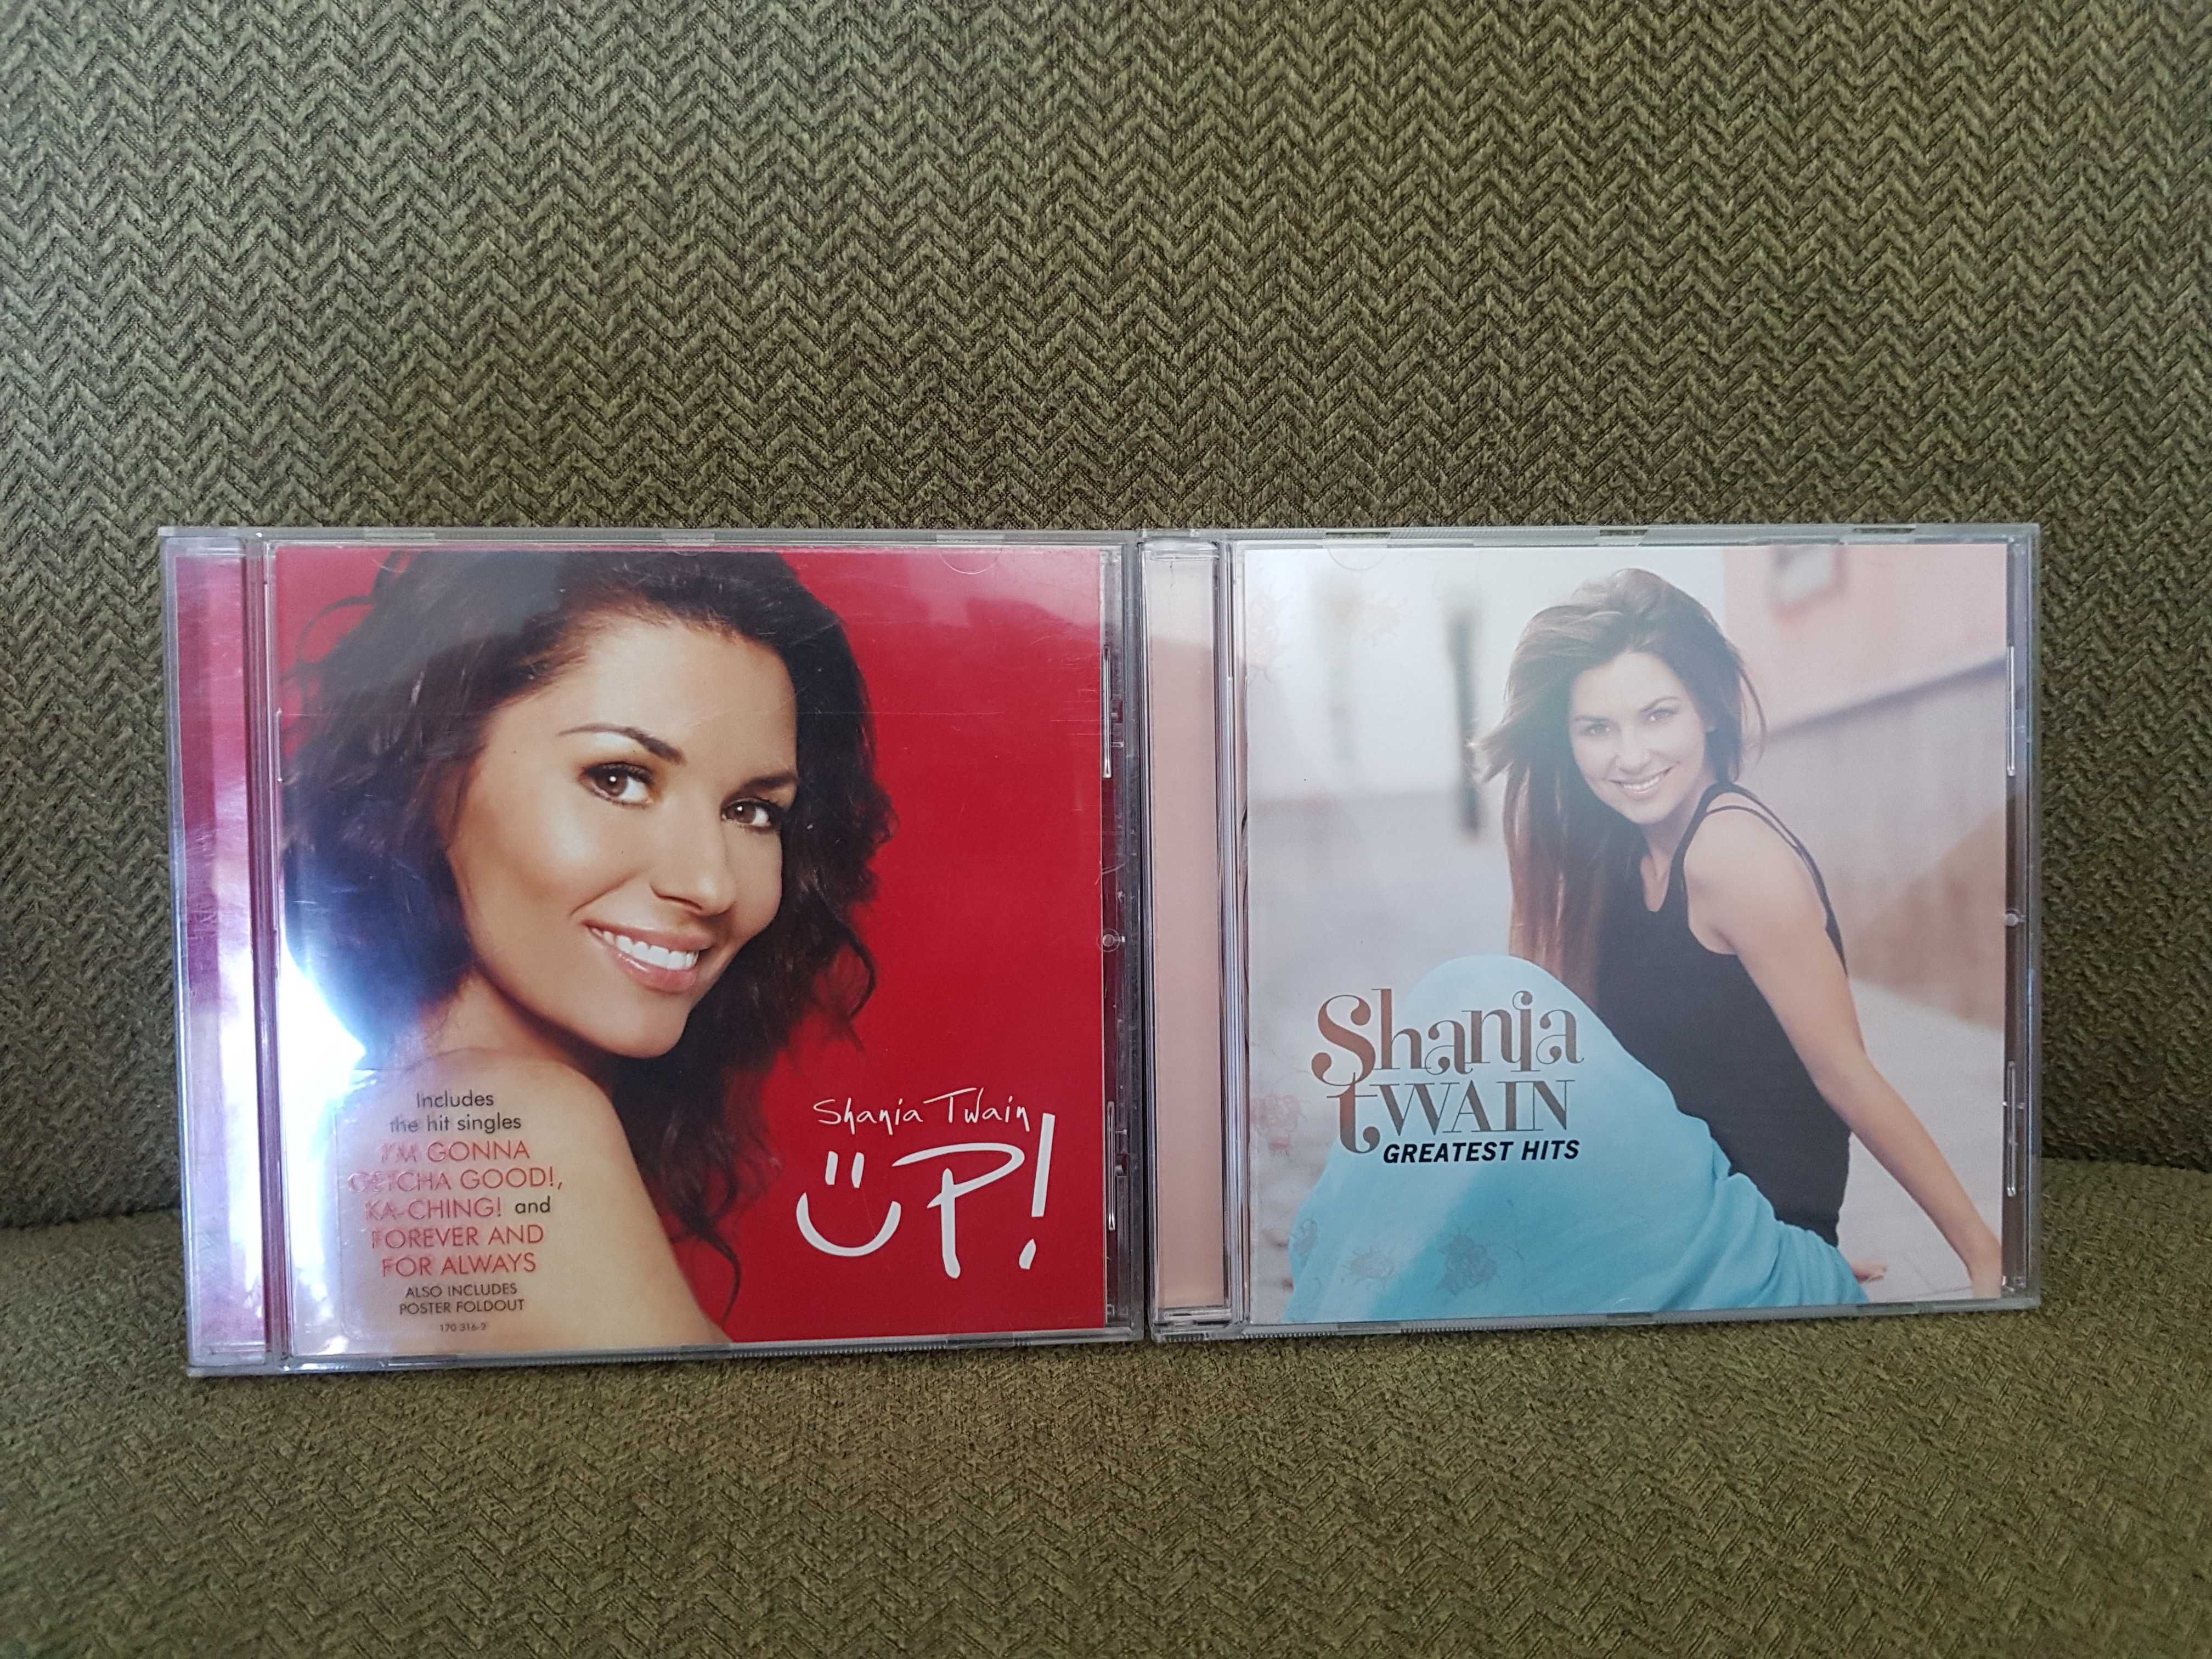 Shania Twain Up! Greatest Hits płyty CD